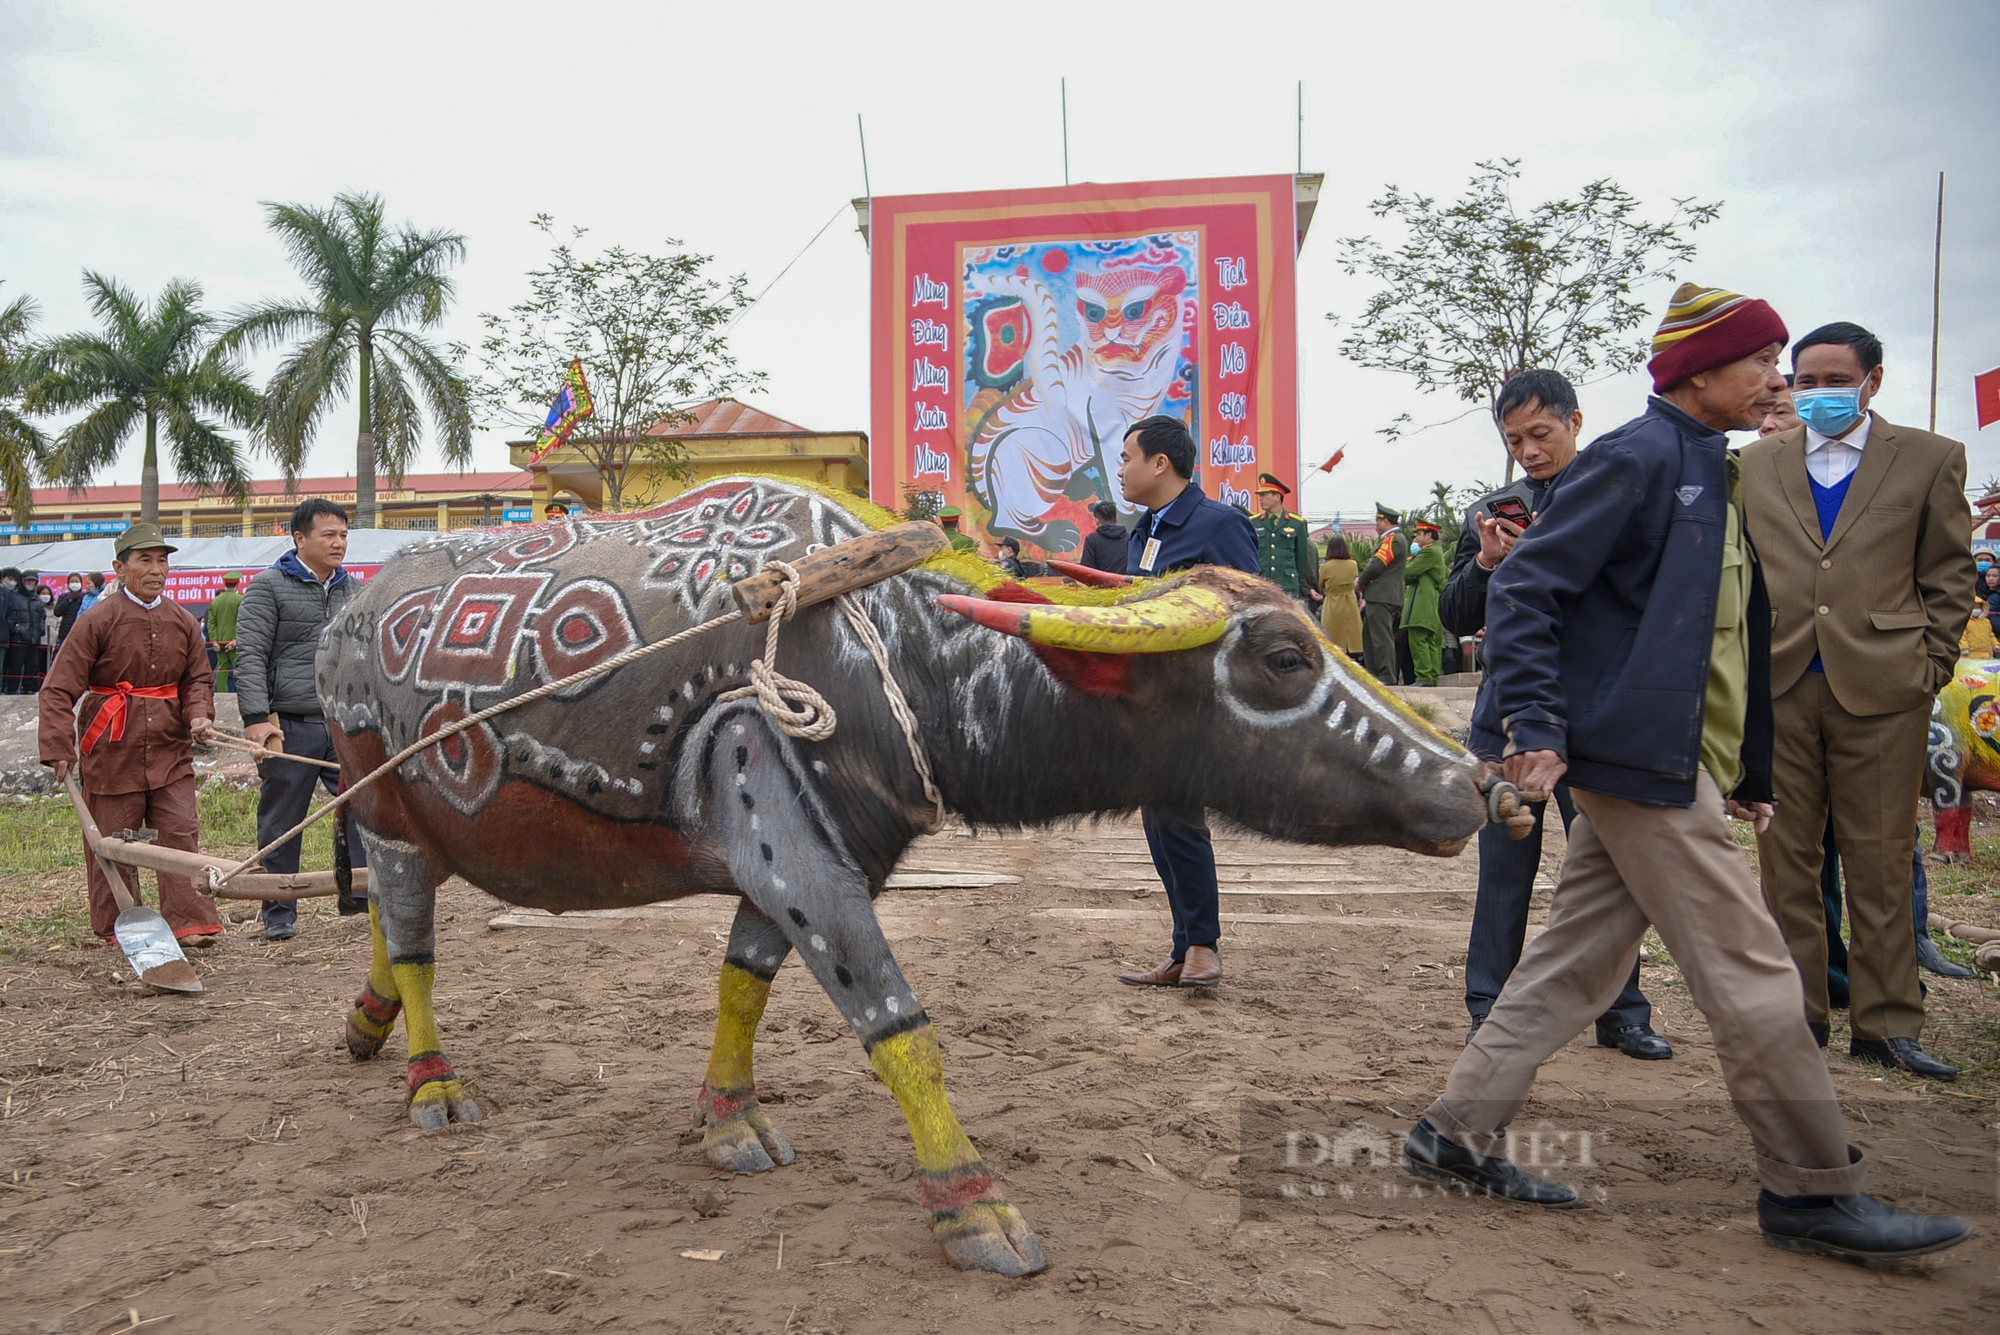 Lão nông hơn 70 tuổi trong vai vua đi cáy tại lễ hội Tịch điền - Ảnh 3.